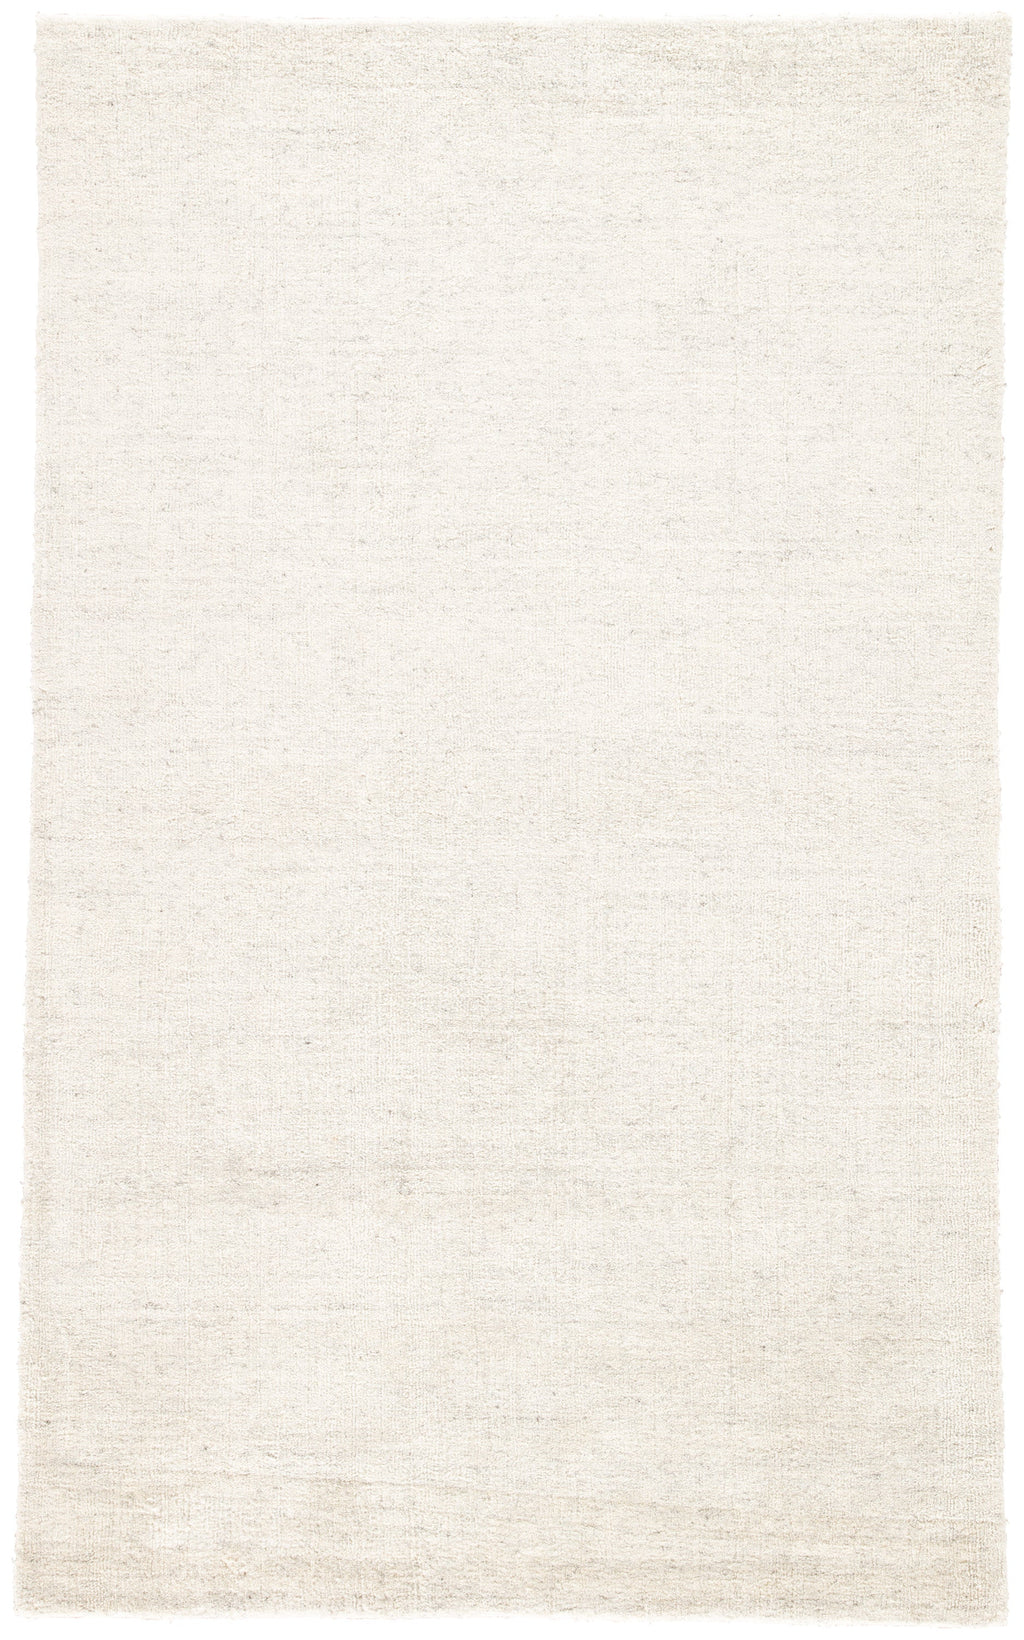 beecher solid rug in whitecap gray plum kitten design by jaipur 1